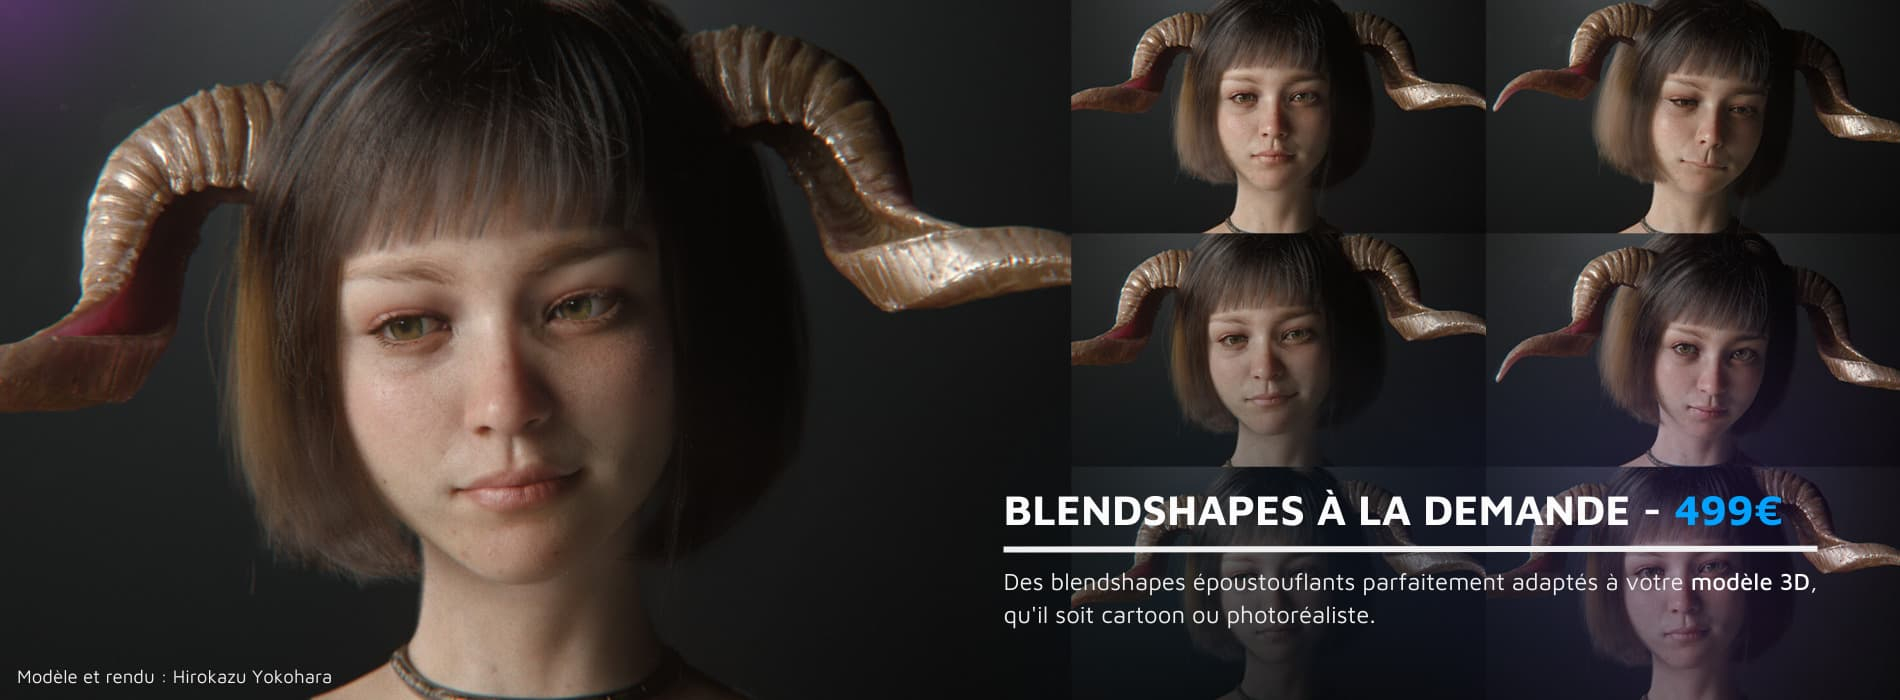 Modèle 3D d'une fille avec des cornes faisant différentes expressions